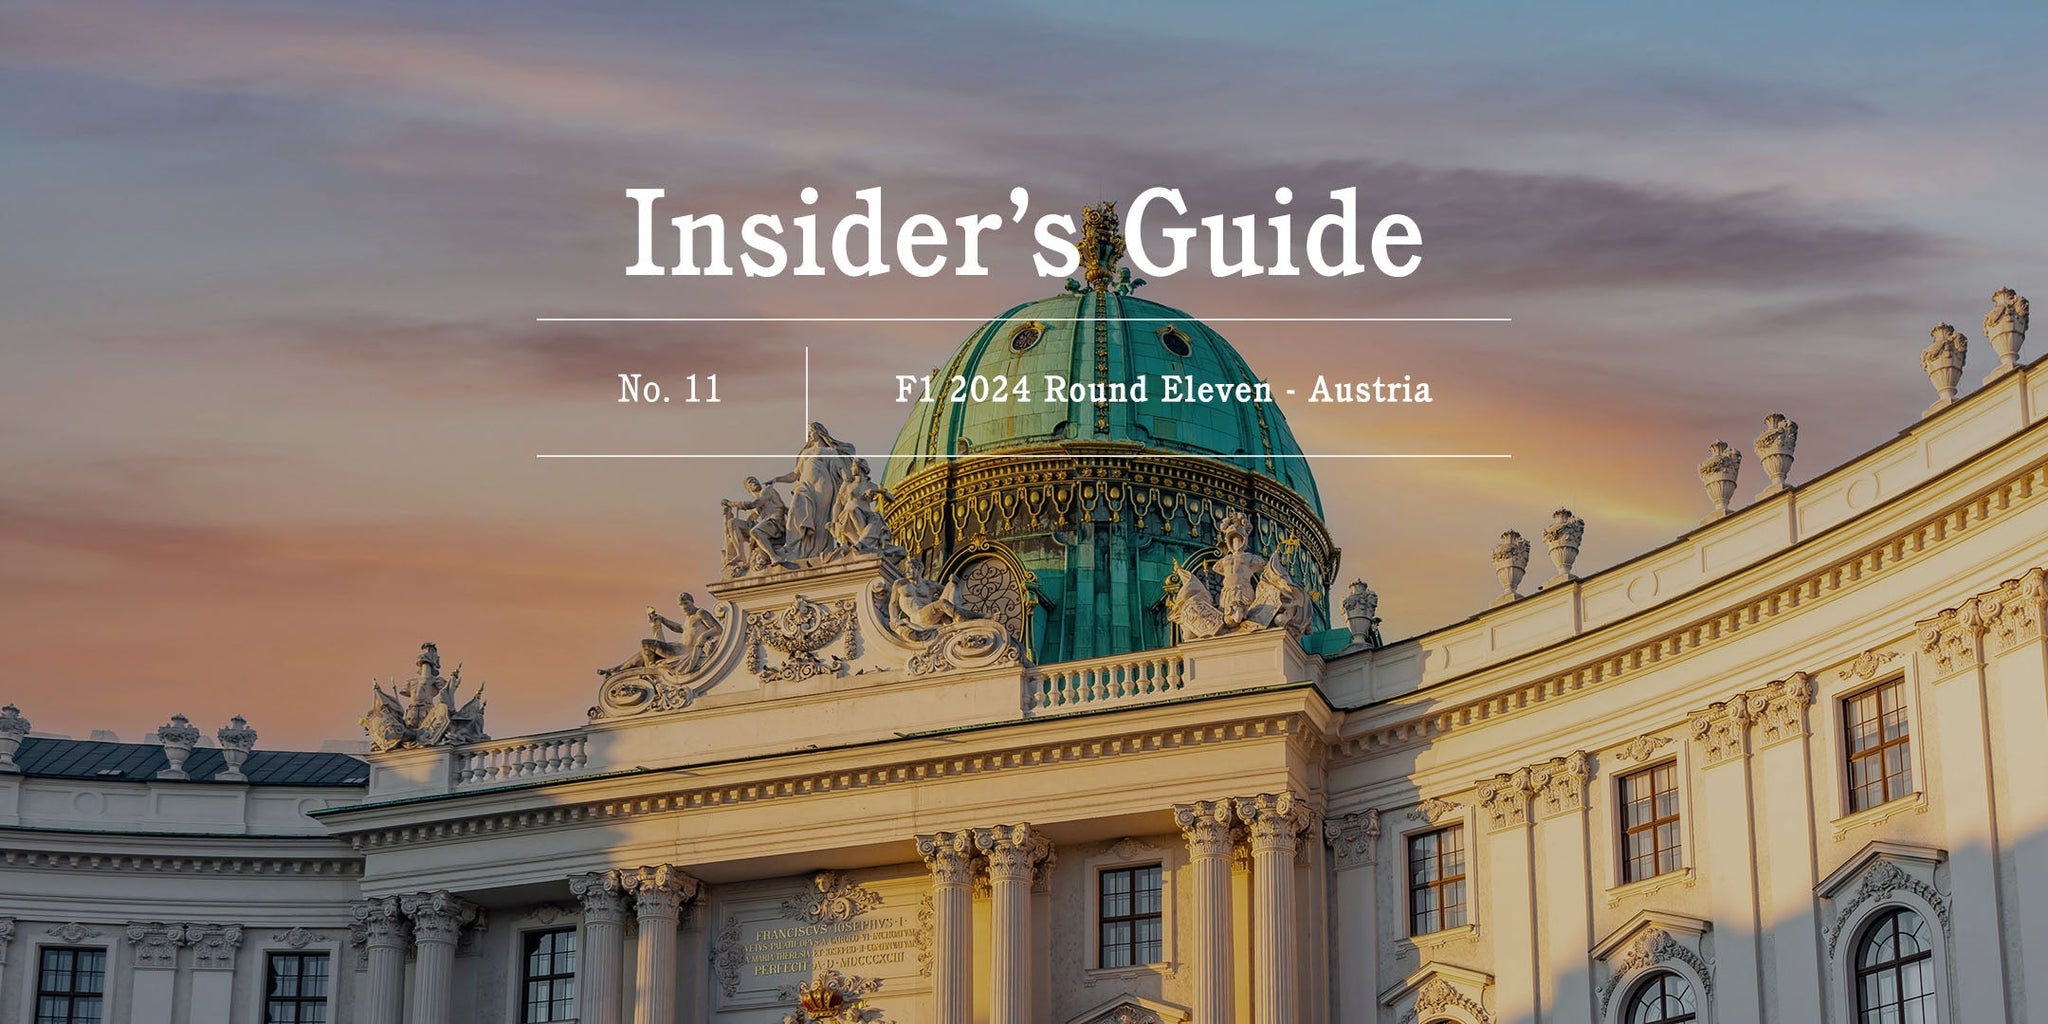 F1 2024 Insider's Guide No. 11 – Austria